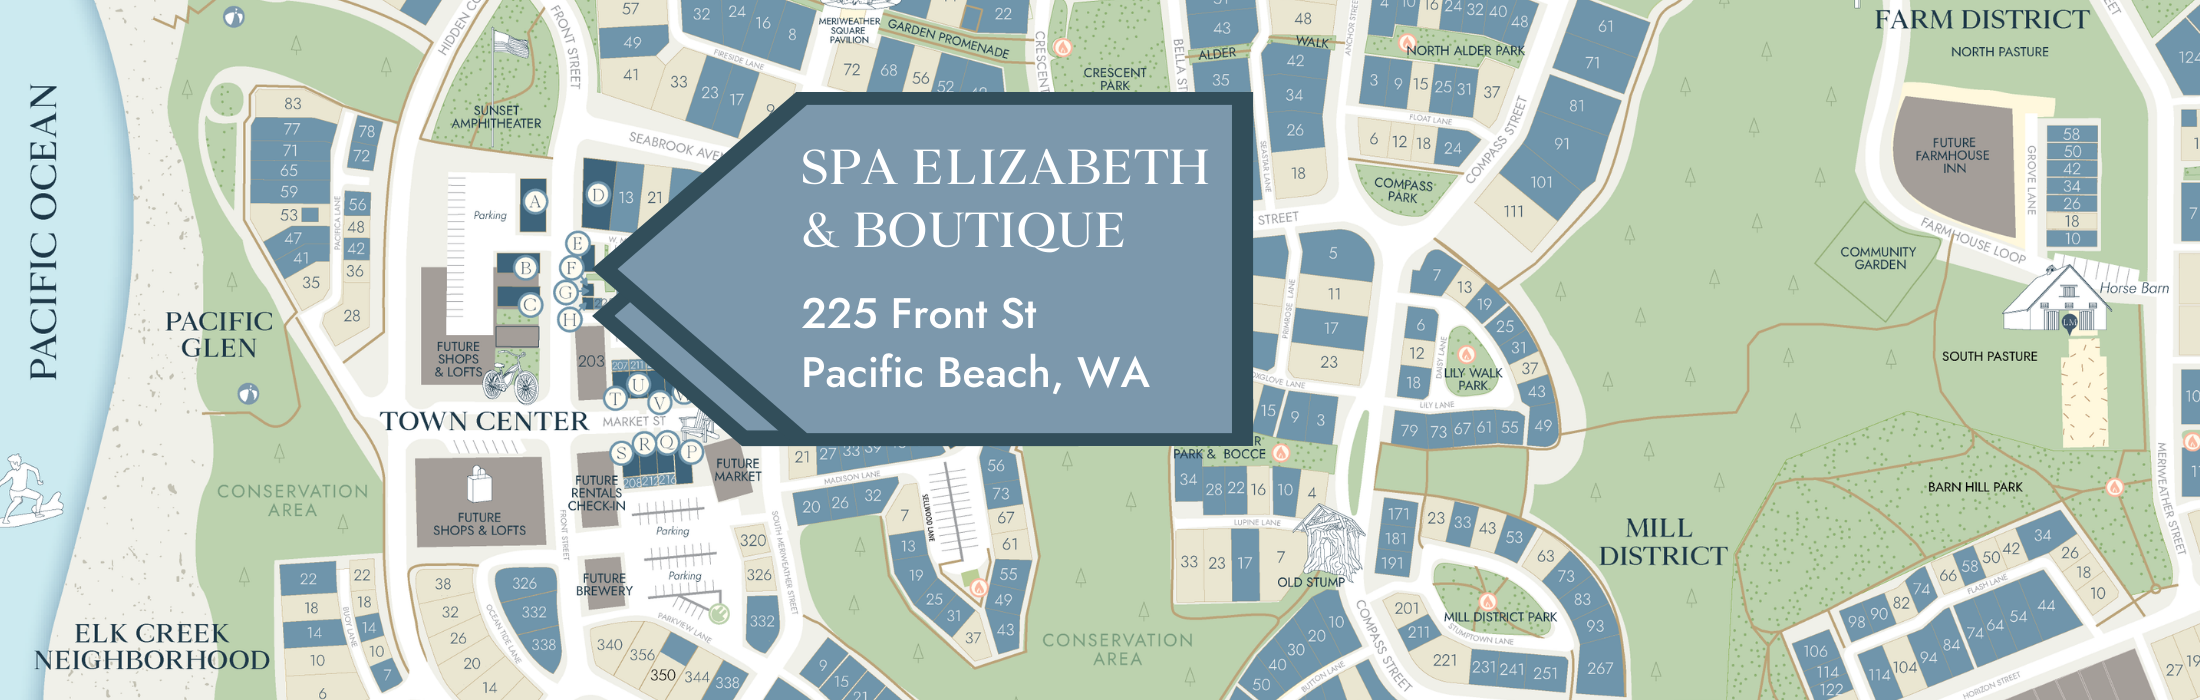 Spa Elizabeth & Boutique Location